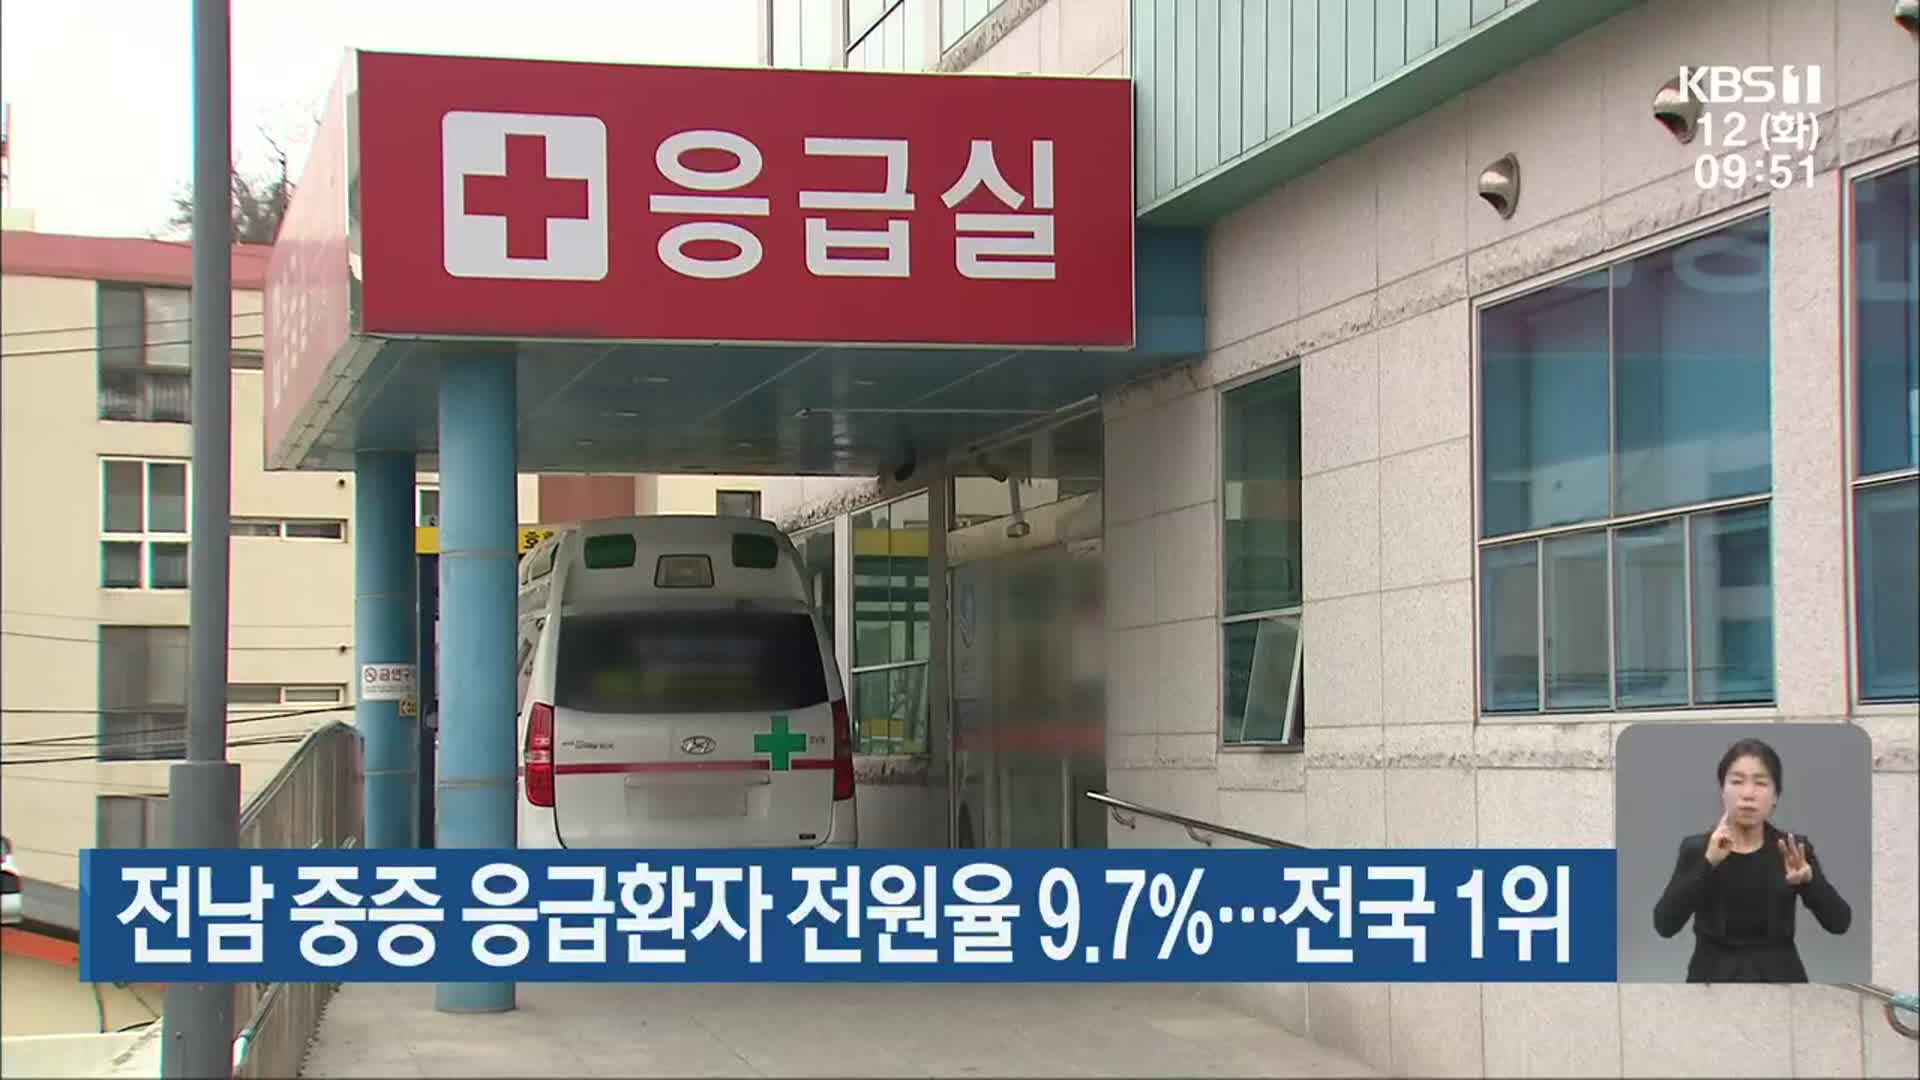 전남 중증 응급환자 전원율 9.7%…전국 1위